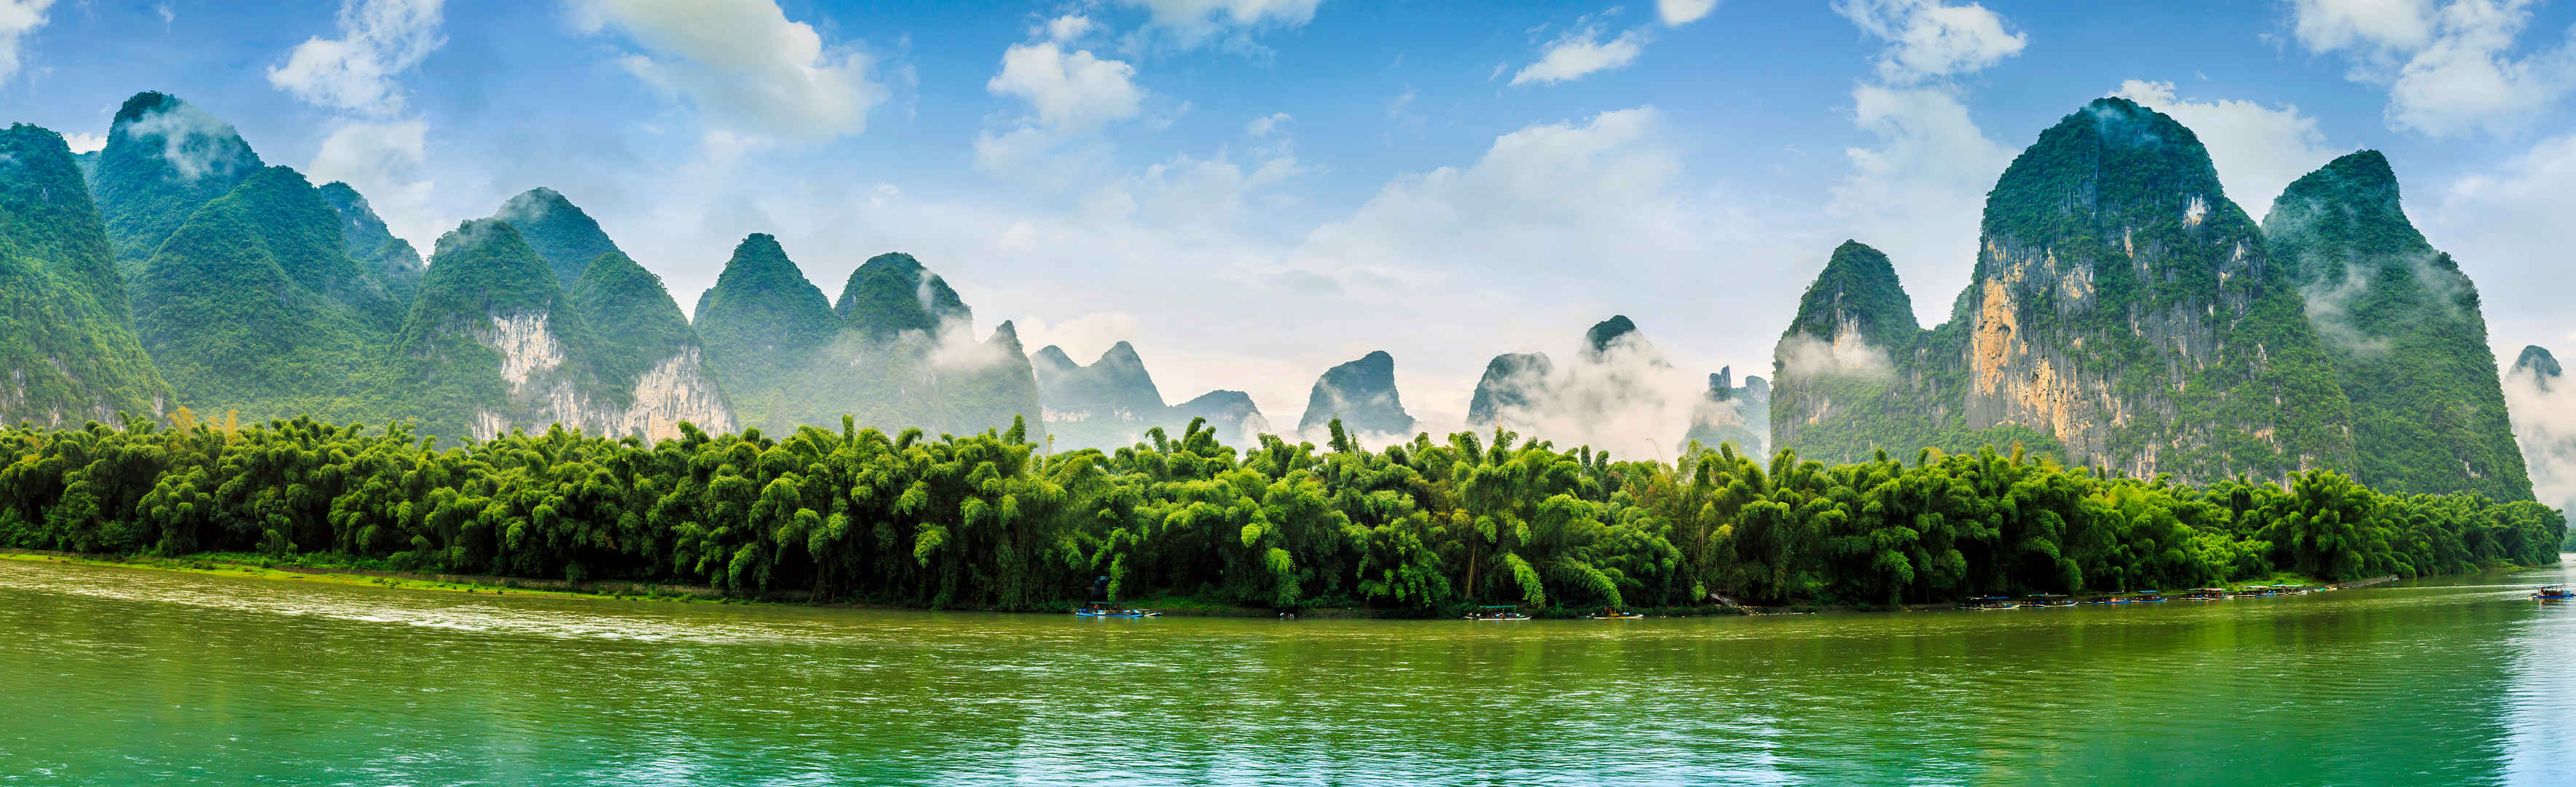 桂林美丽的自然景观壁纸-